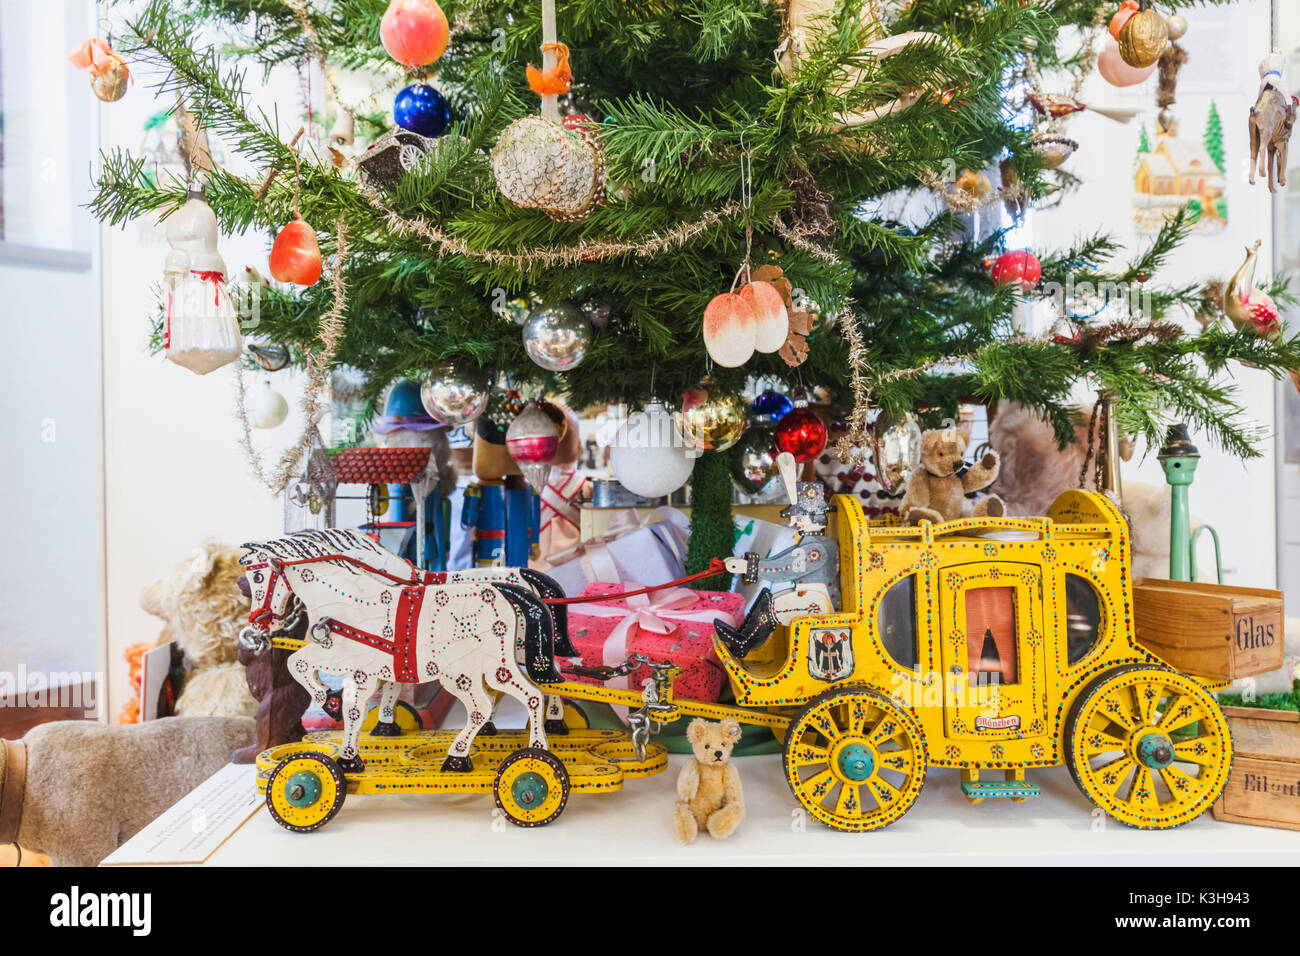 Germany, Bavaria, Munich, Marienplatz, Ancien hôtel de ville, le Musée du Jouet et Teddy (Spielzeugmuseum), pièce d'arbre de Noël et des jouets pour enfants Historique Banque D'Images